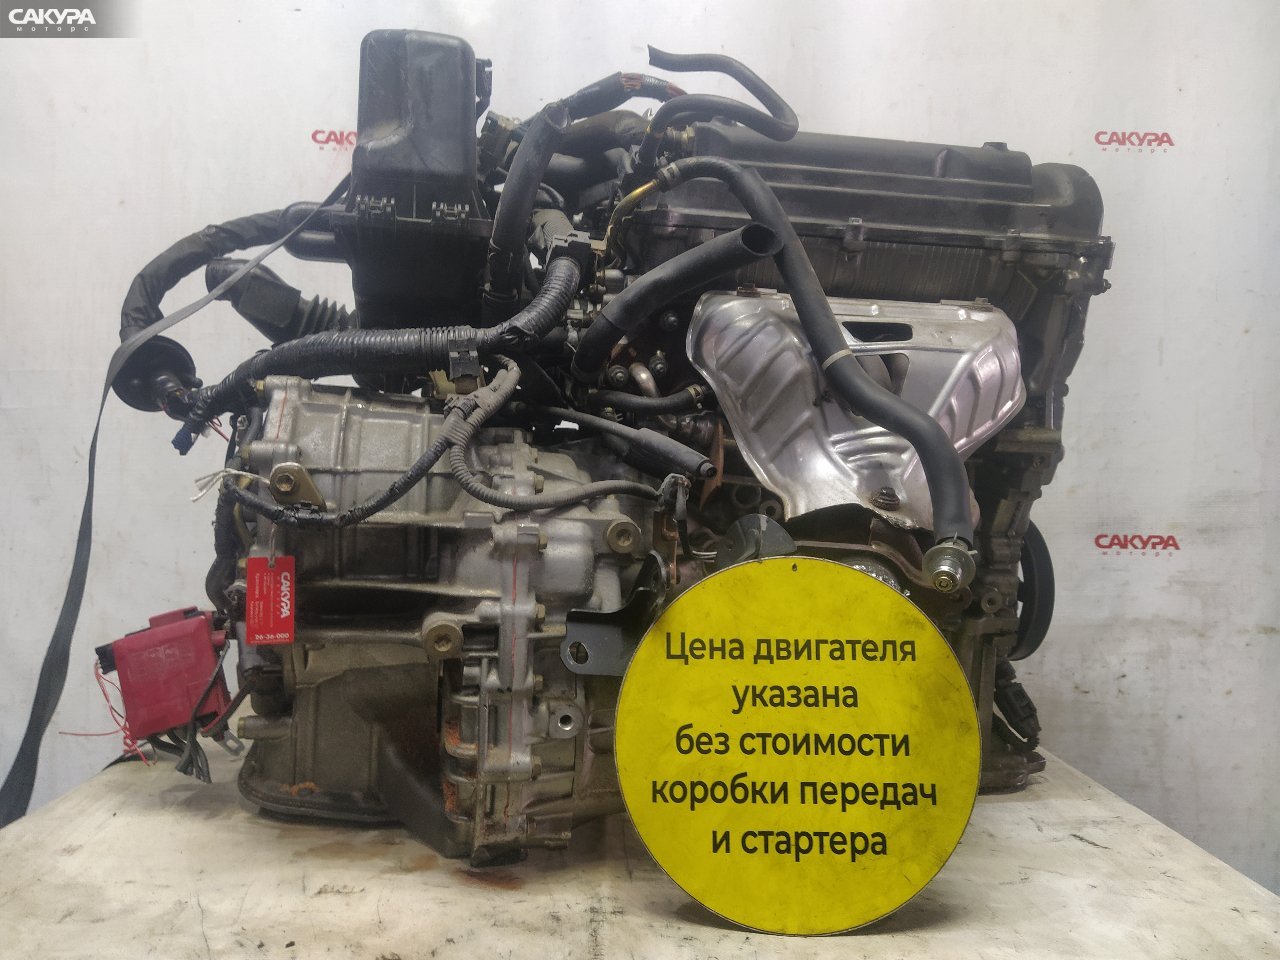 Двигатель Toyota Sienta NCP81G 1NZ-FE: купить в Сакура Красноярск.